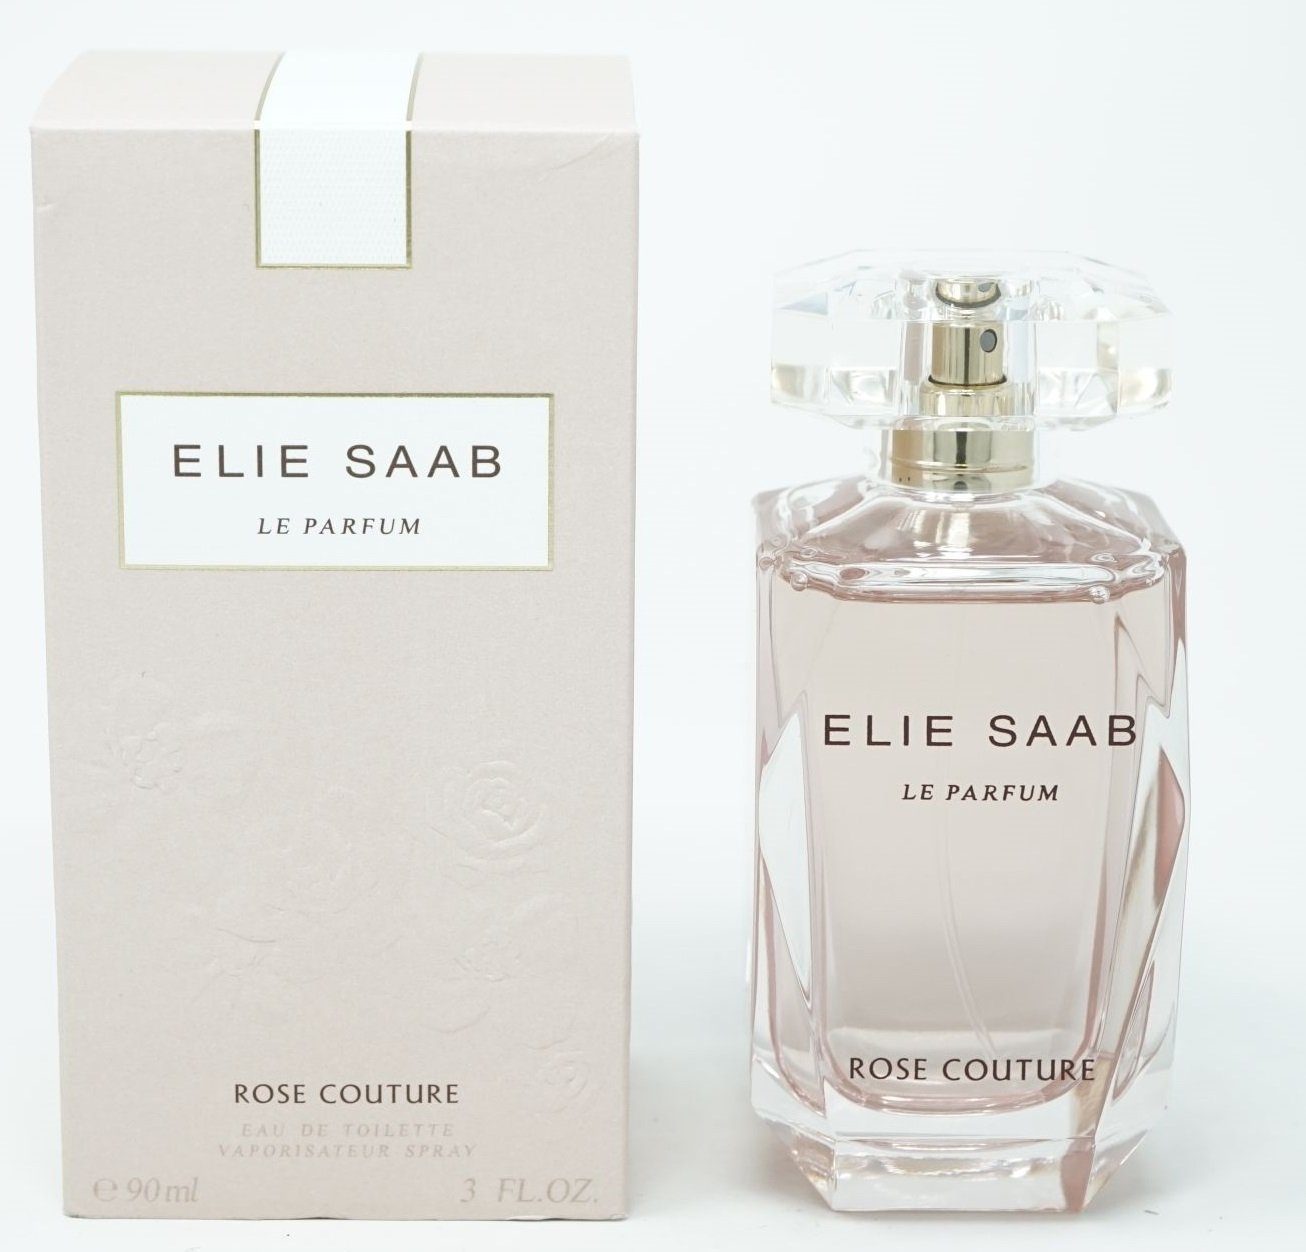 ELIE SAAB Eau 90ml Le Elie de Toilette Rose Eau de Saab Toilette Couture Spray Parfum